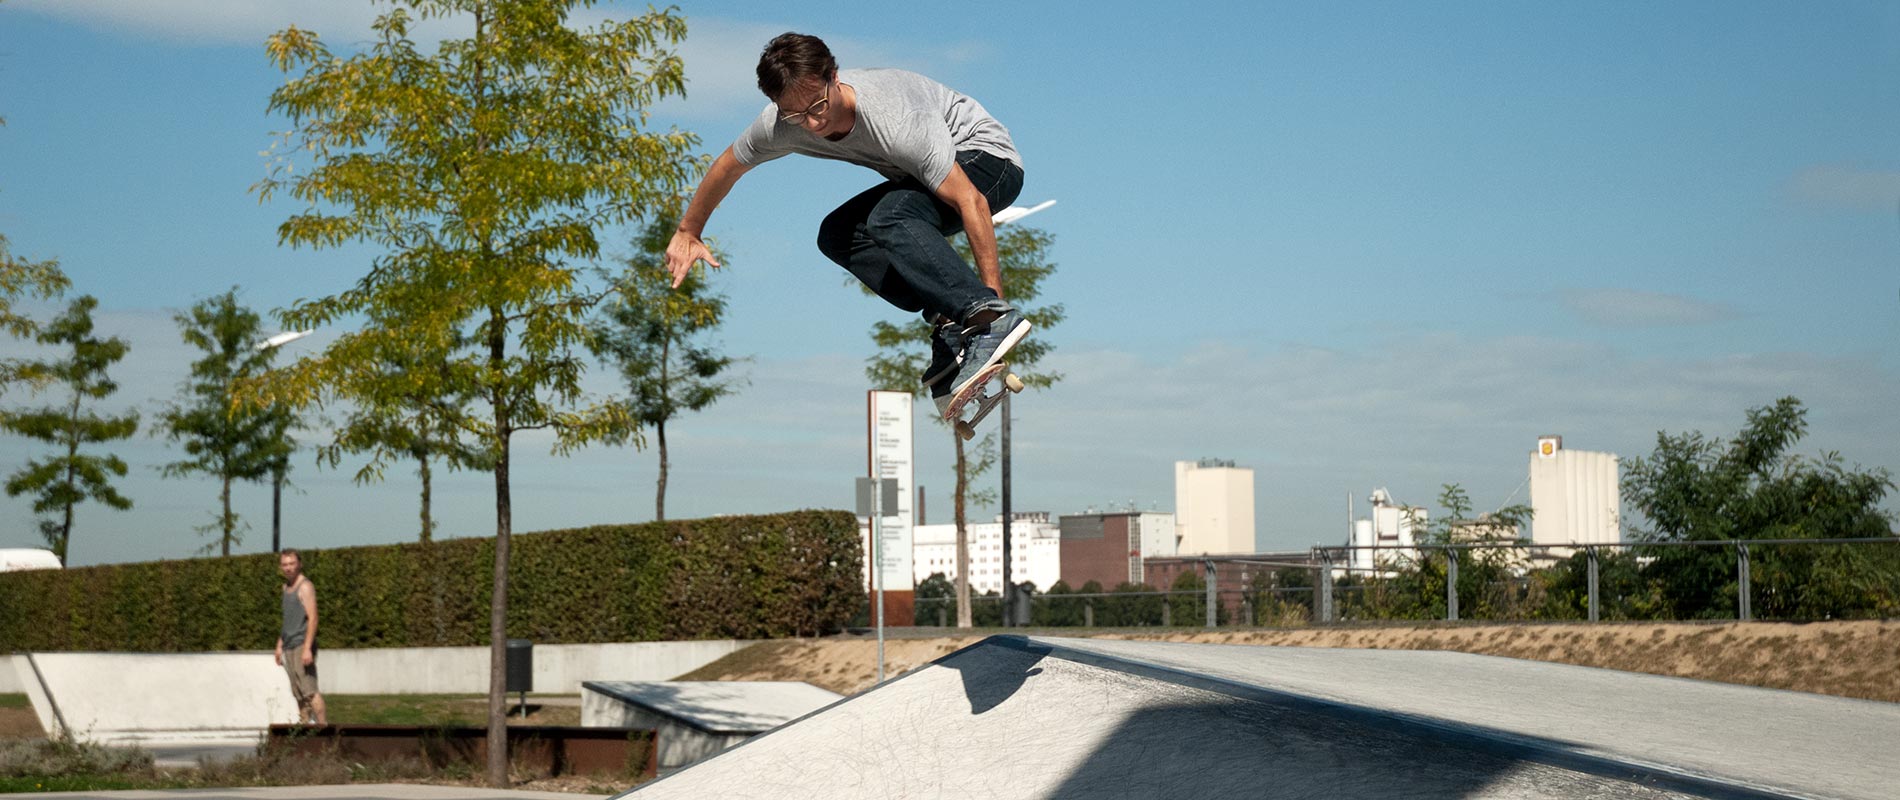 X-Move Skateanlagen Skateparks aus Ortbeton und Fertigteilen - Planung Umsetzung und Bau